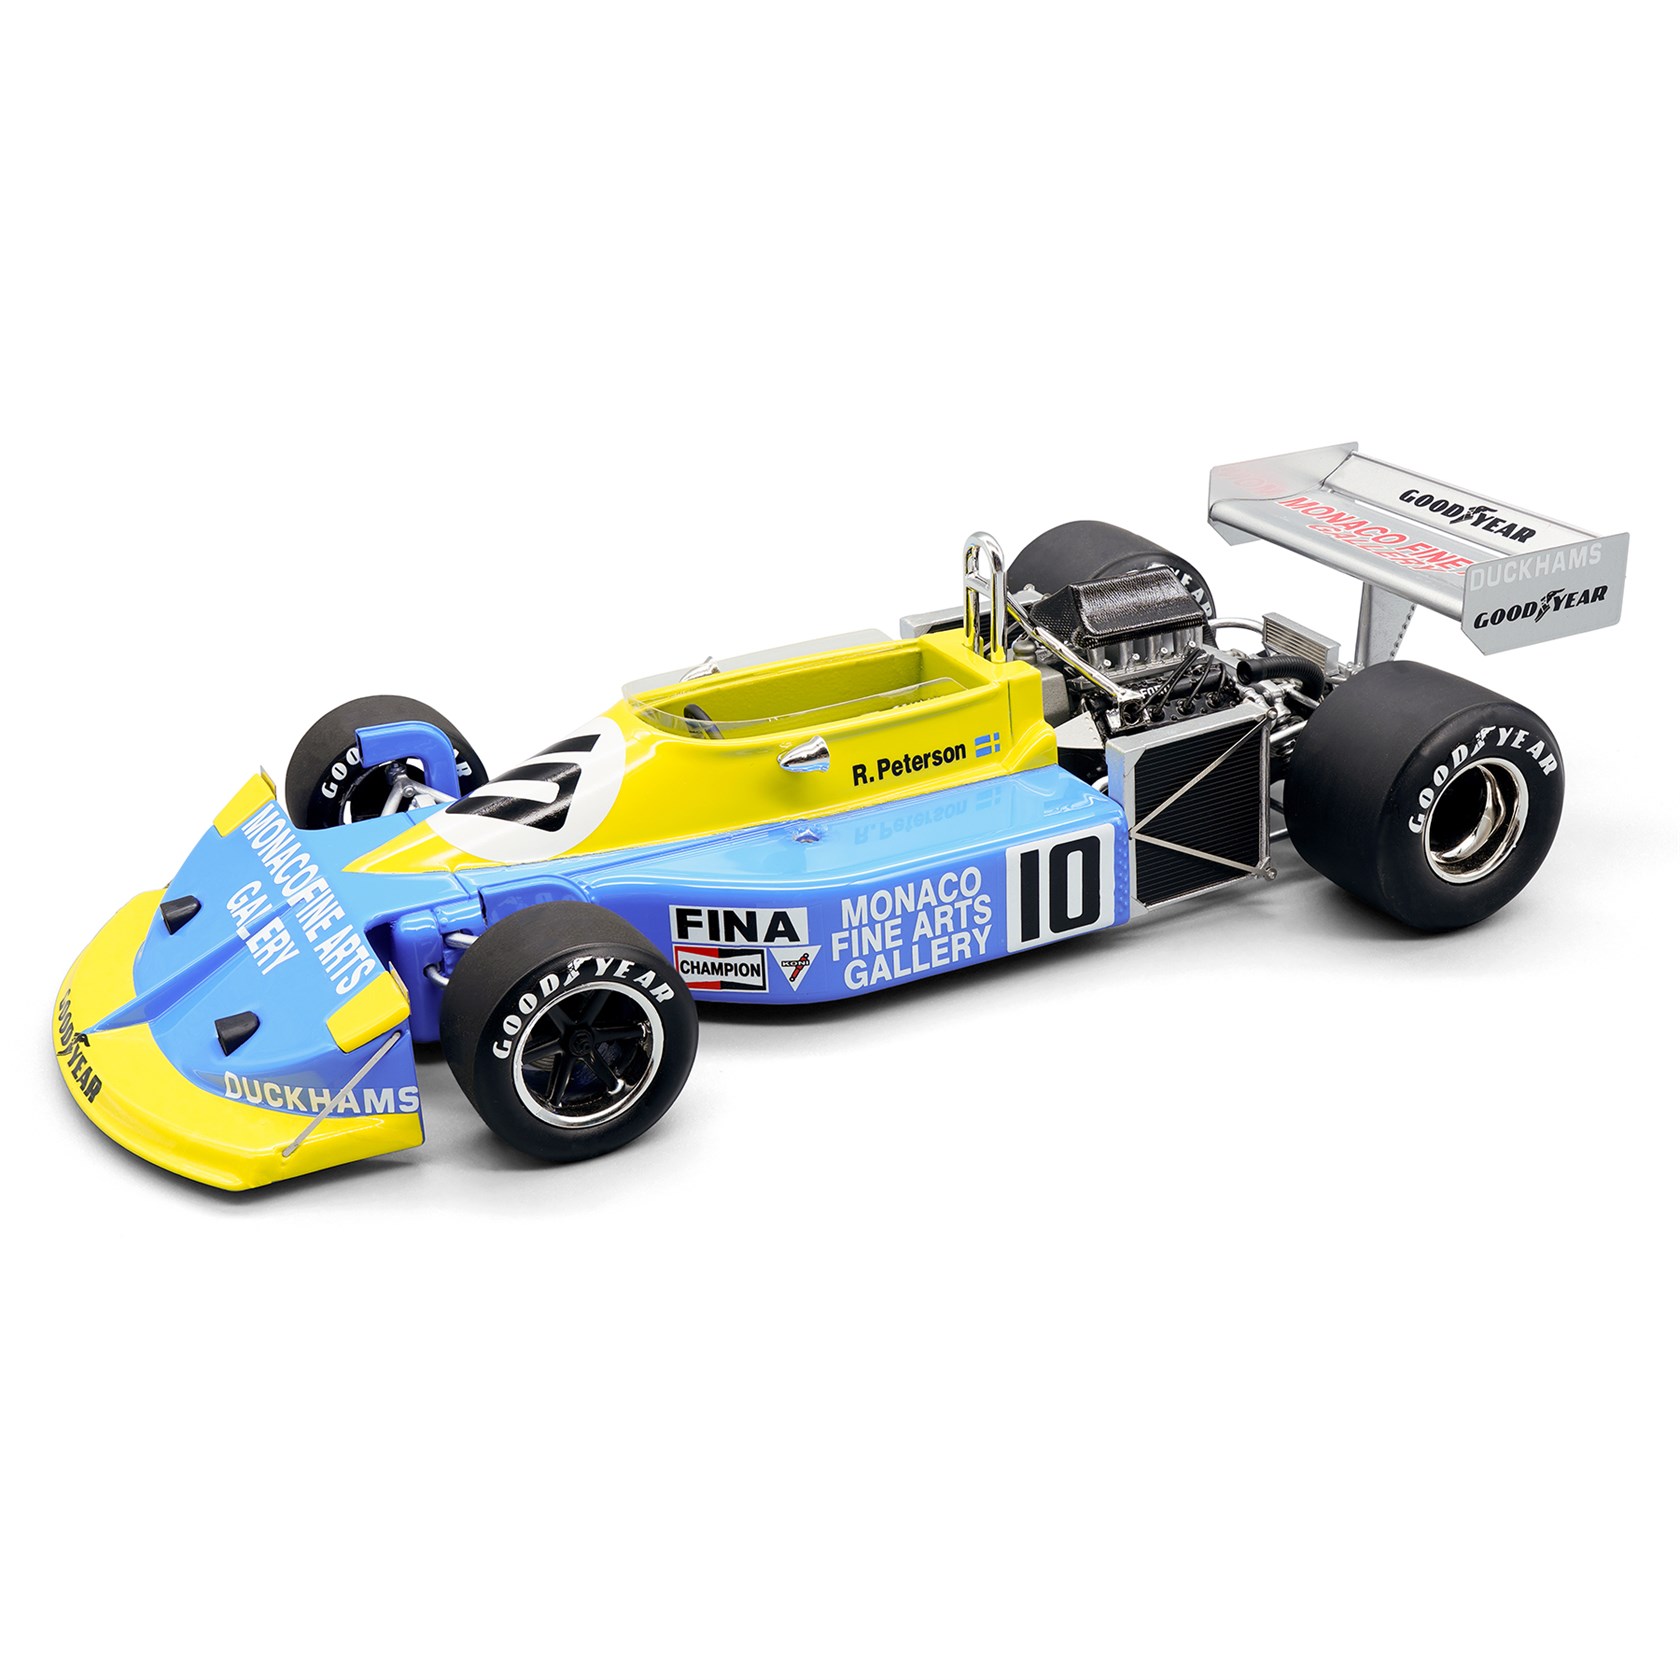 Tecnomodel March 761 - 1976 Monaco Grand Prix - #10 R. Peterson 1:18